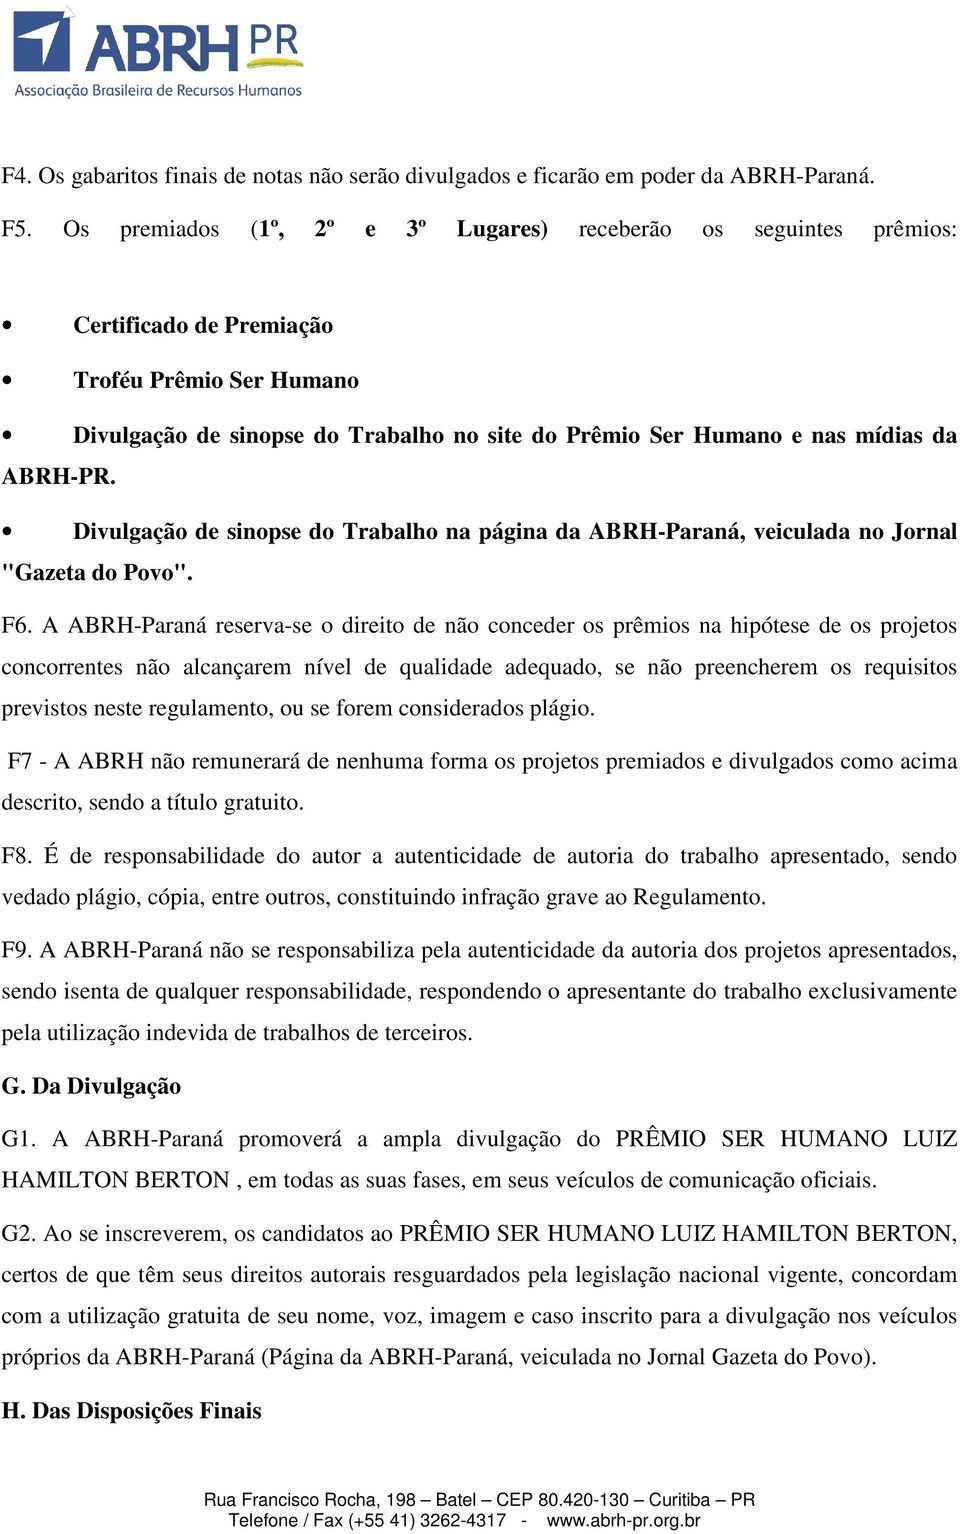 ABRH-PR. Divulgação de sinopse do Trabalho na página da ABRH-Paraná, veiculada no Jornal "Gazeta do Povo". F6.